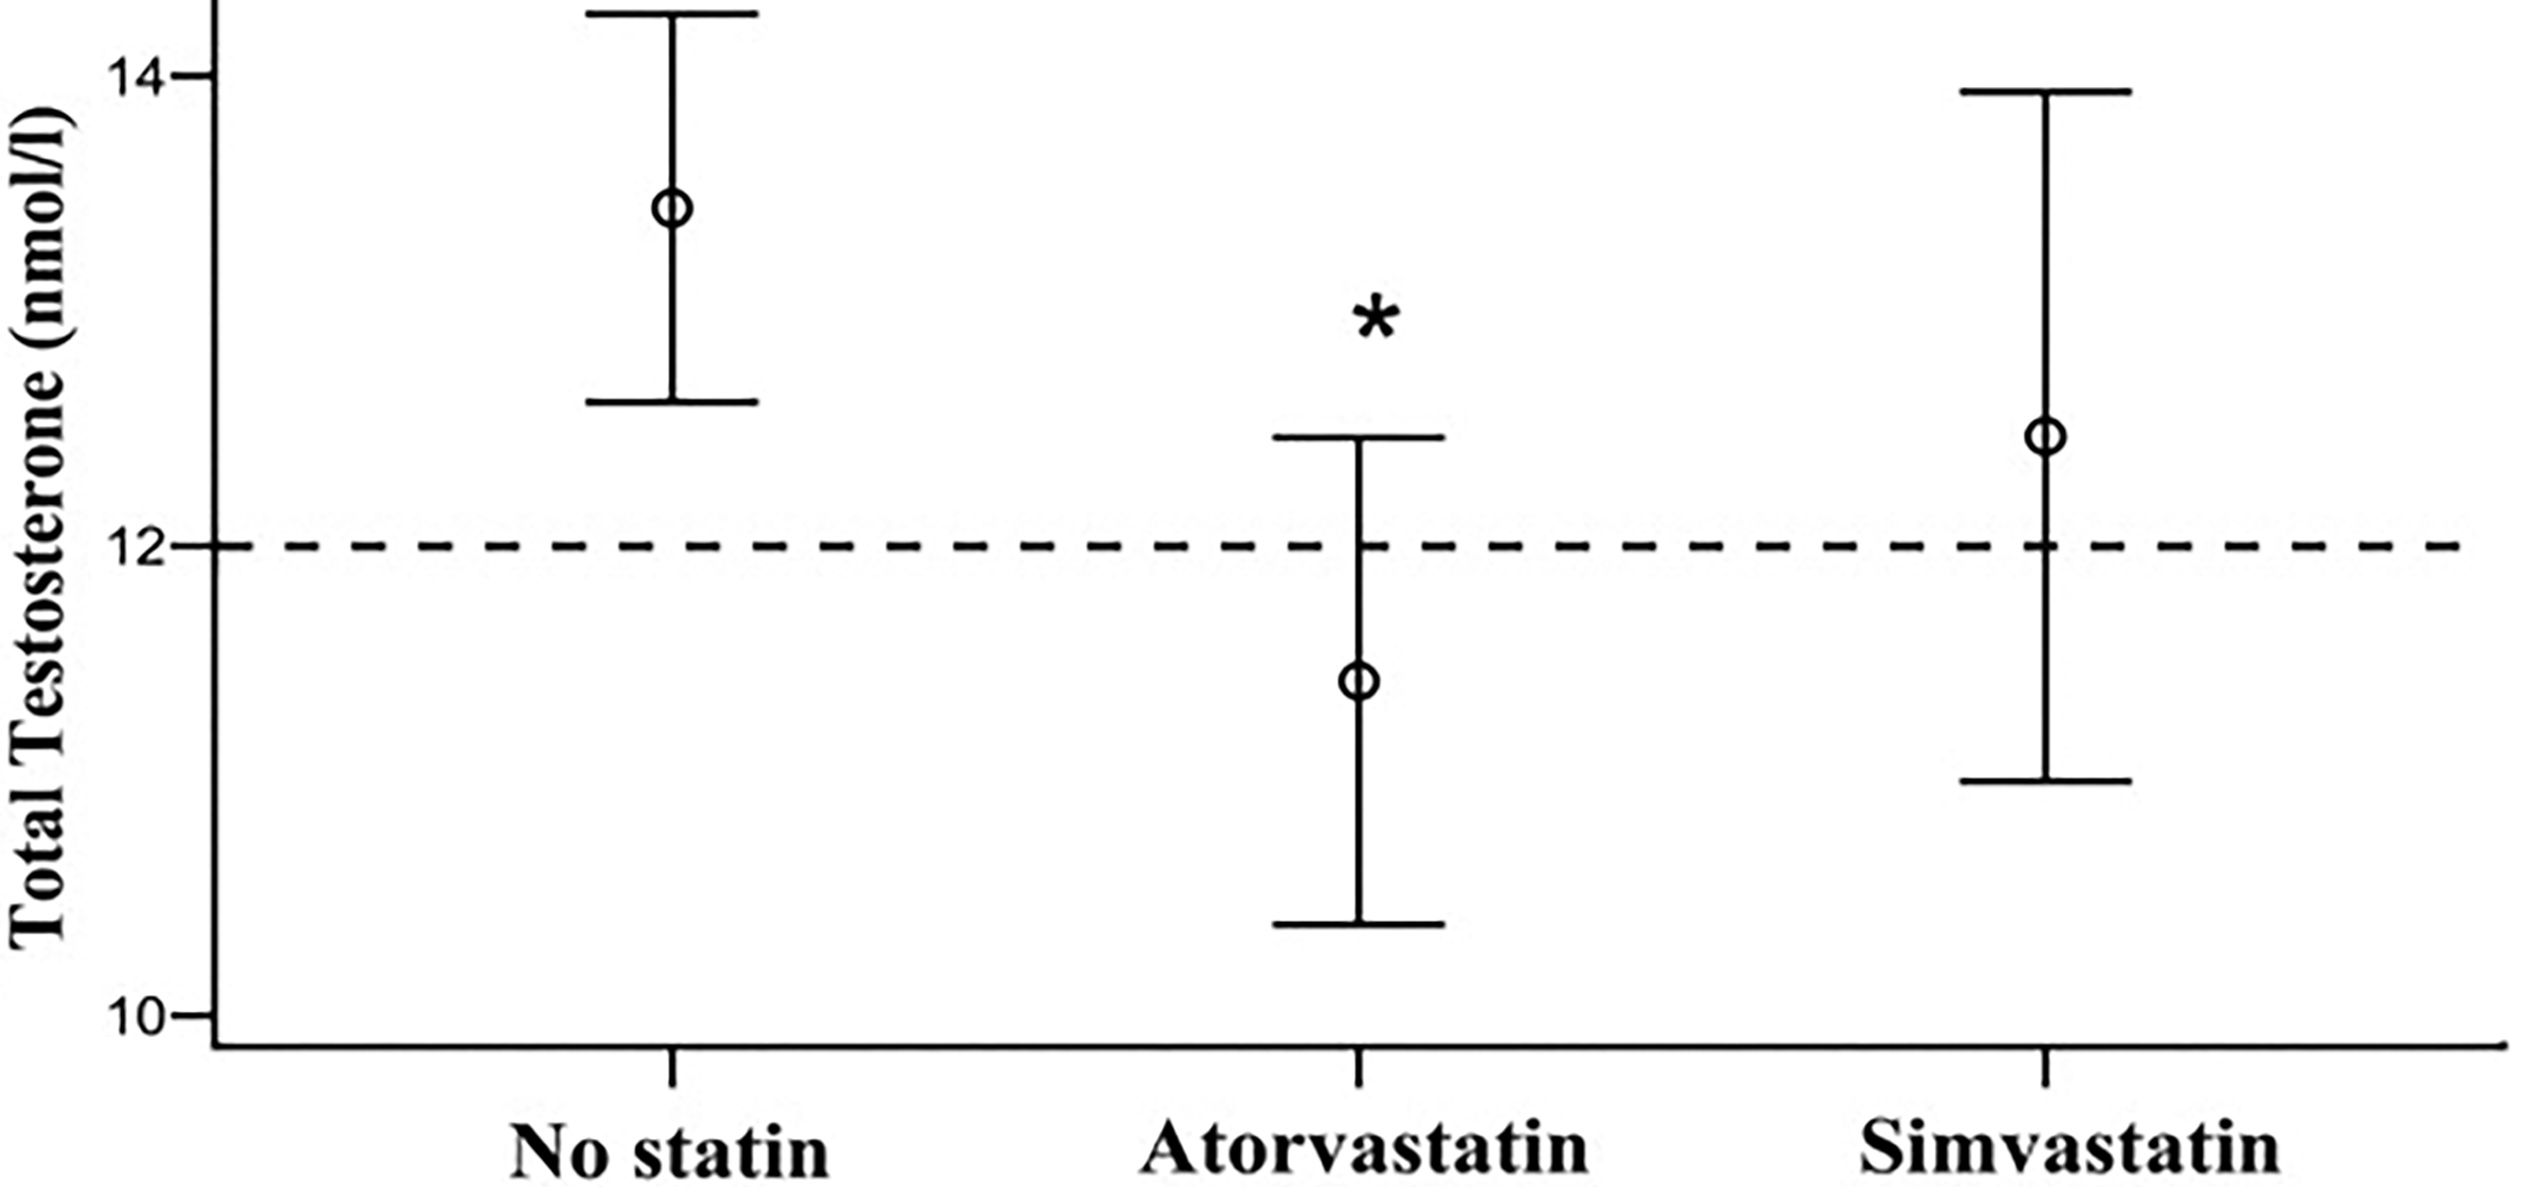 L'impact sur le taux de testostérone varie d'une statine à une autre